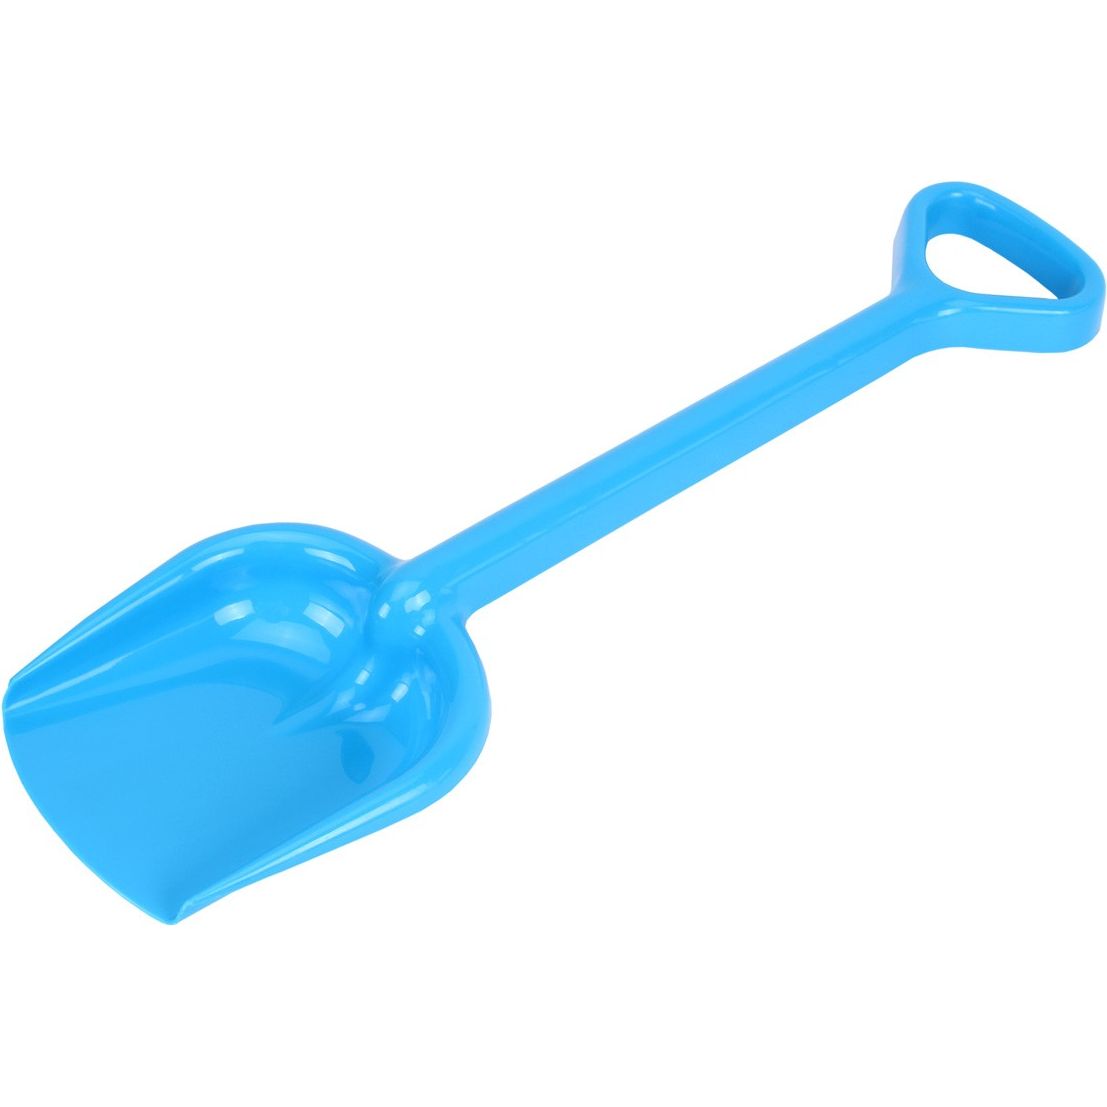 Іграшкова лопатка ТехноК Гулівер блакитна (2766) - фото 1